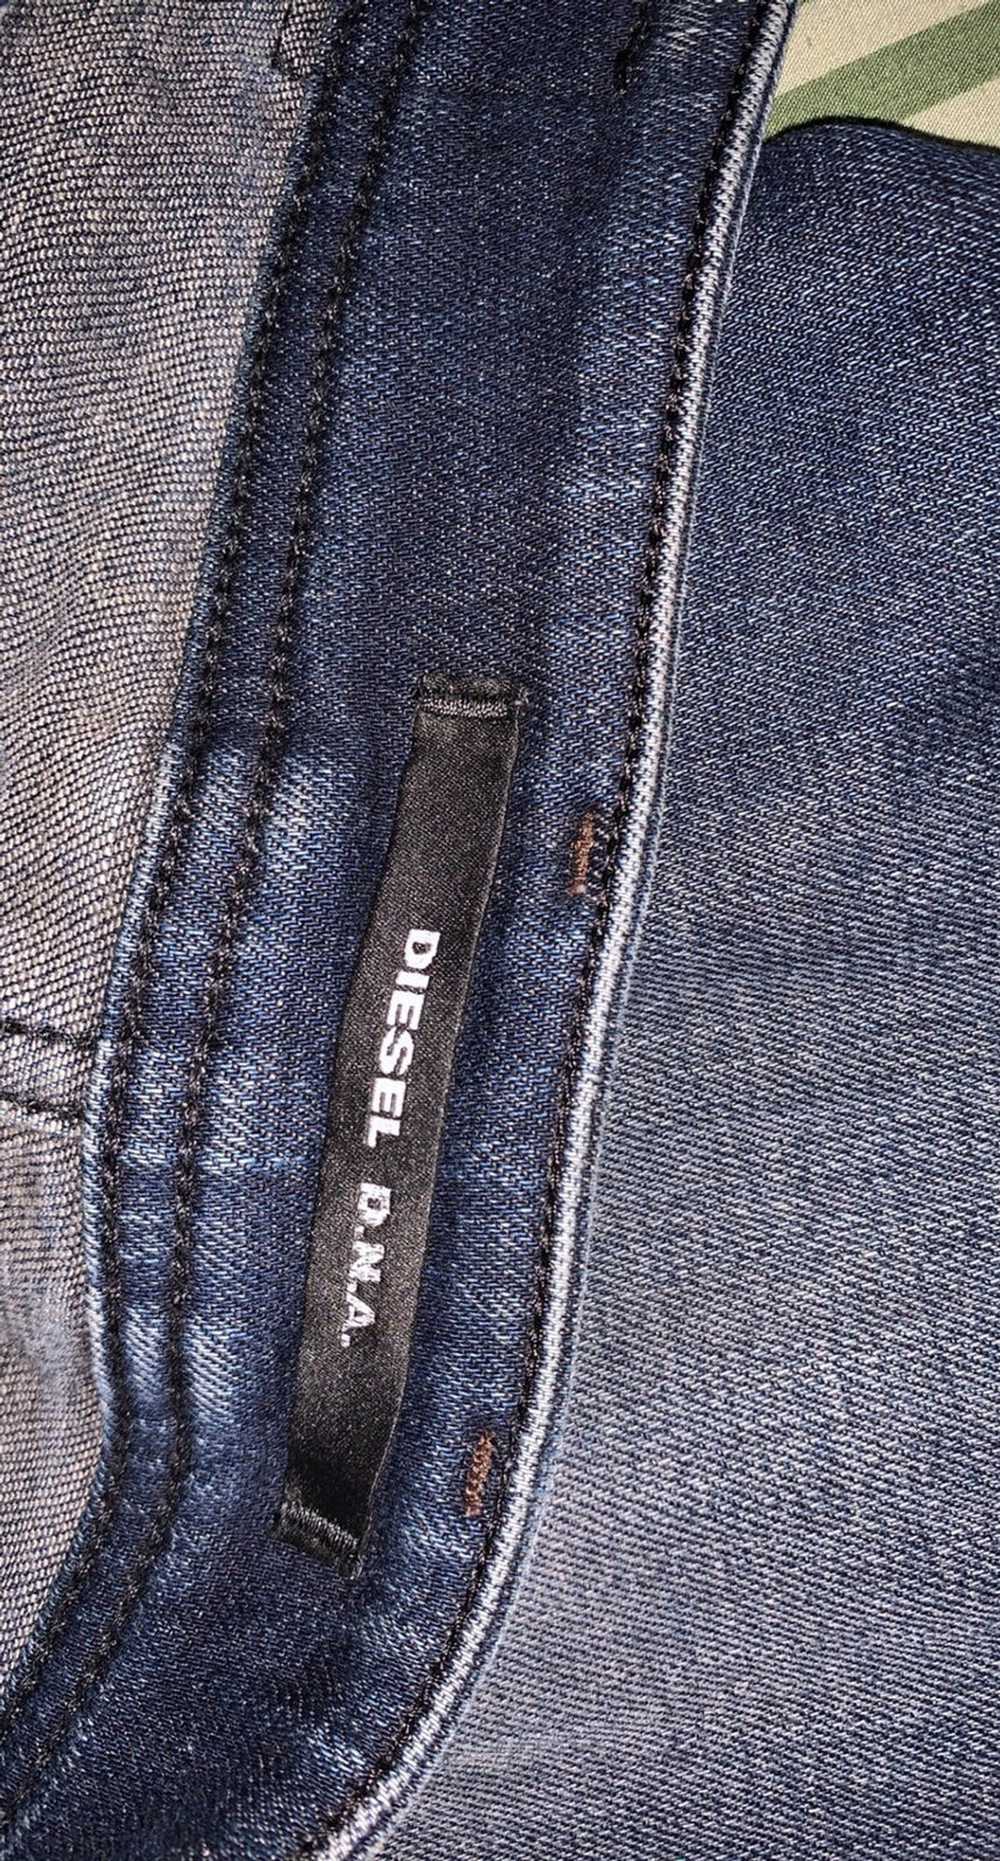 Diesel Diesel Jeans - image 2